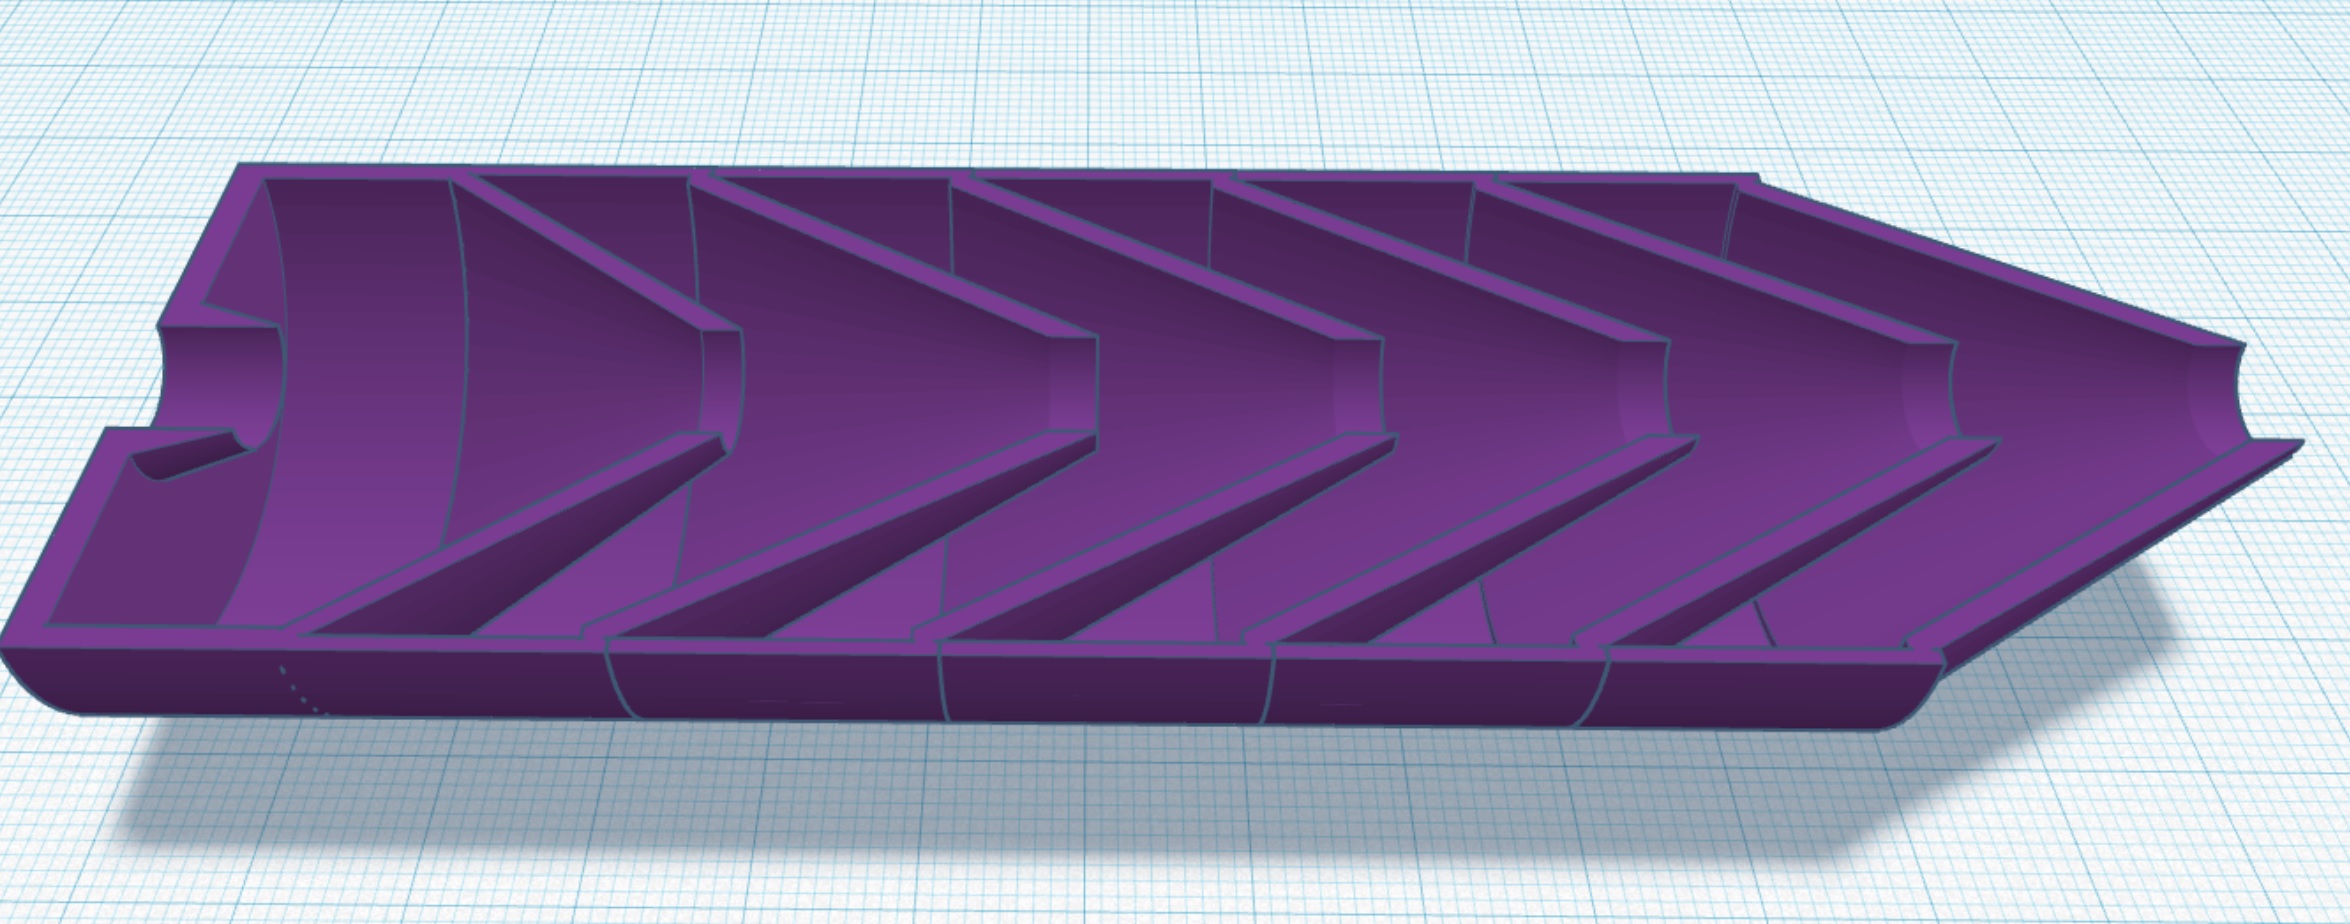 Baffle stack cutaway -.jpg